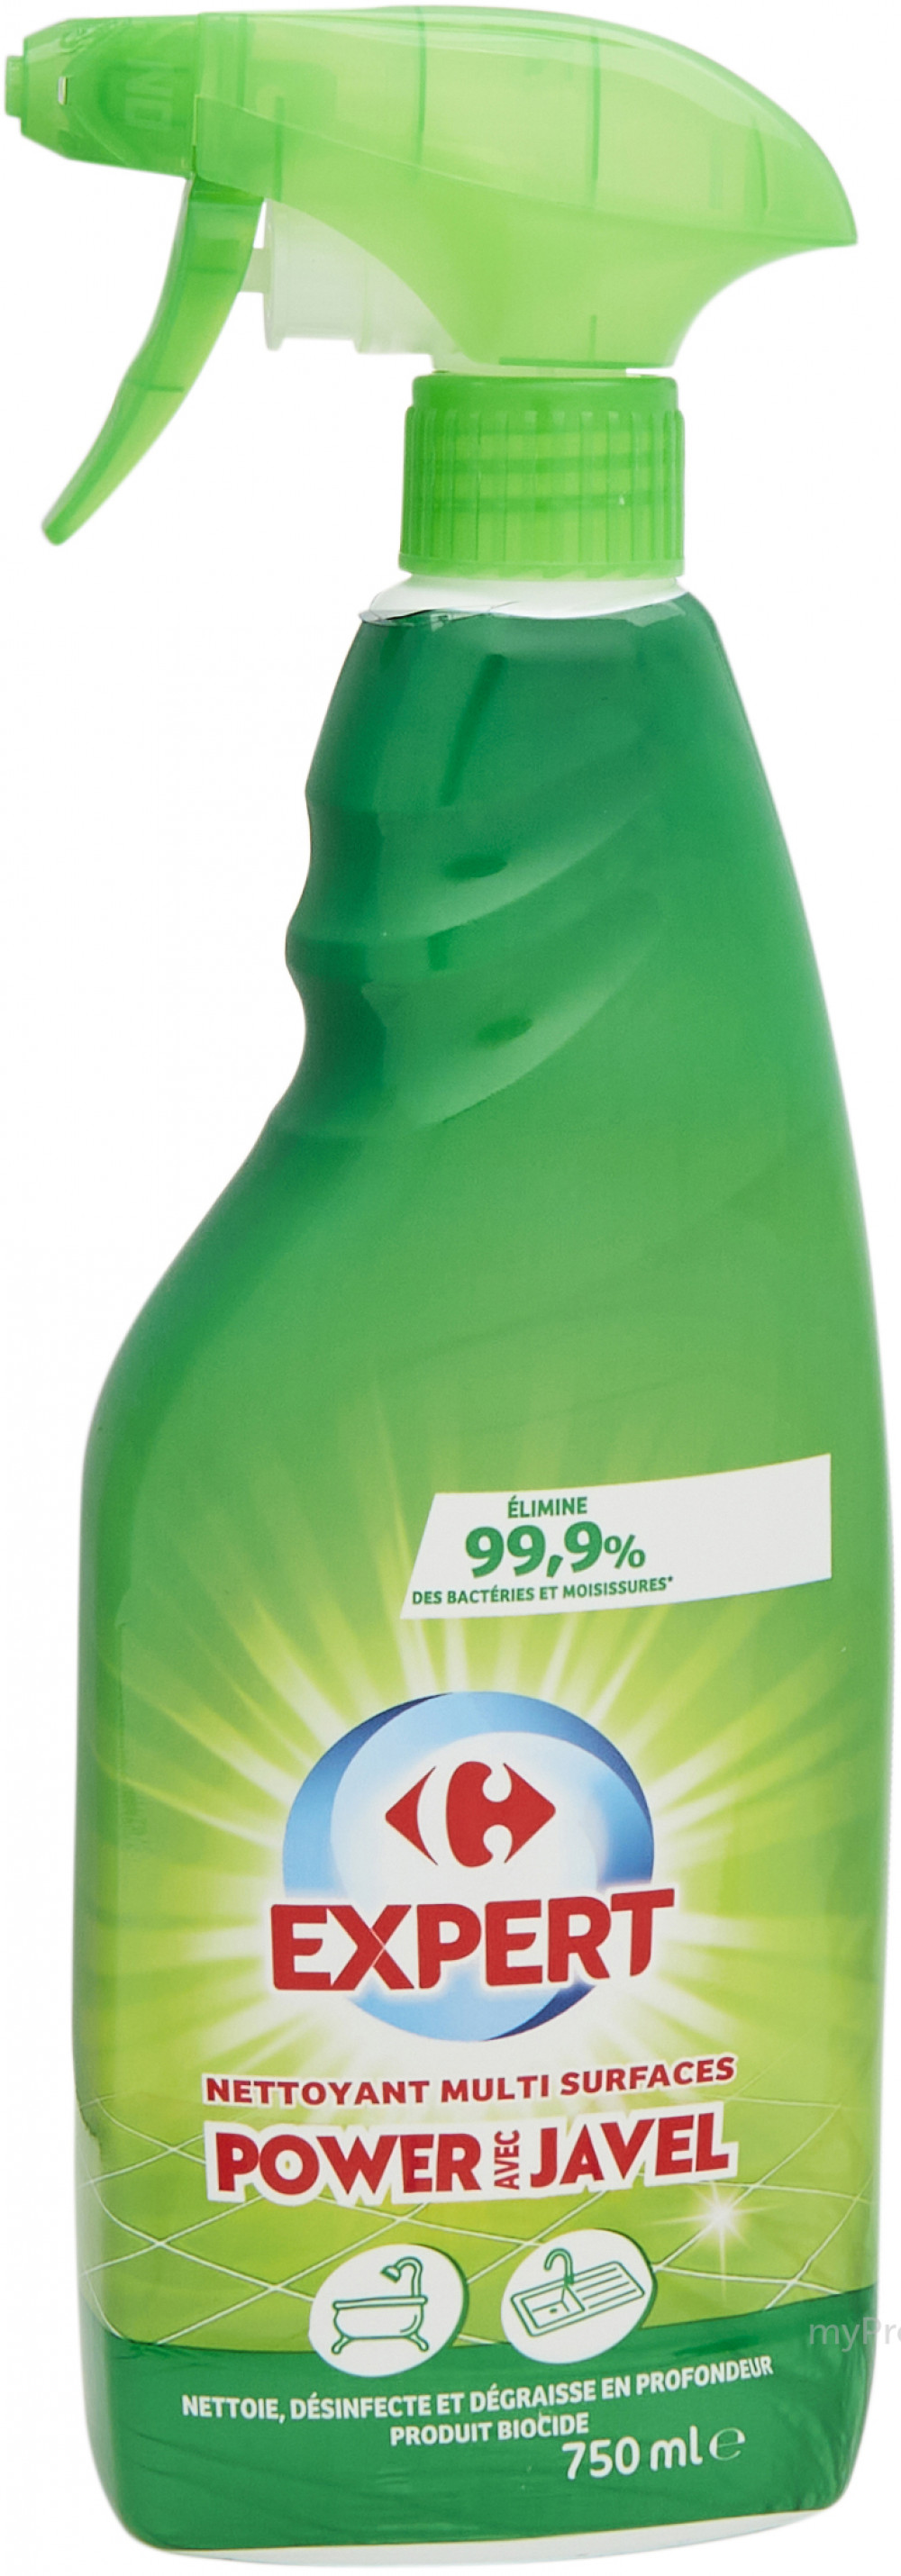 Nettoyant Spray avec javel Leader price 750ml - Bricaillerie